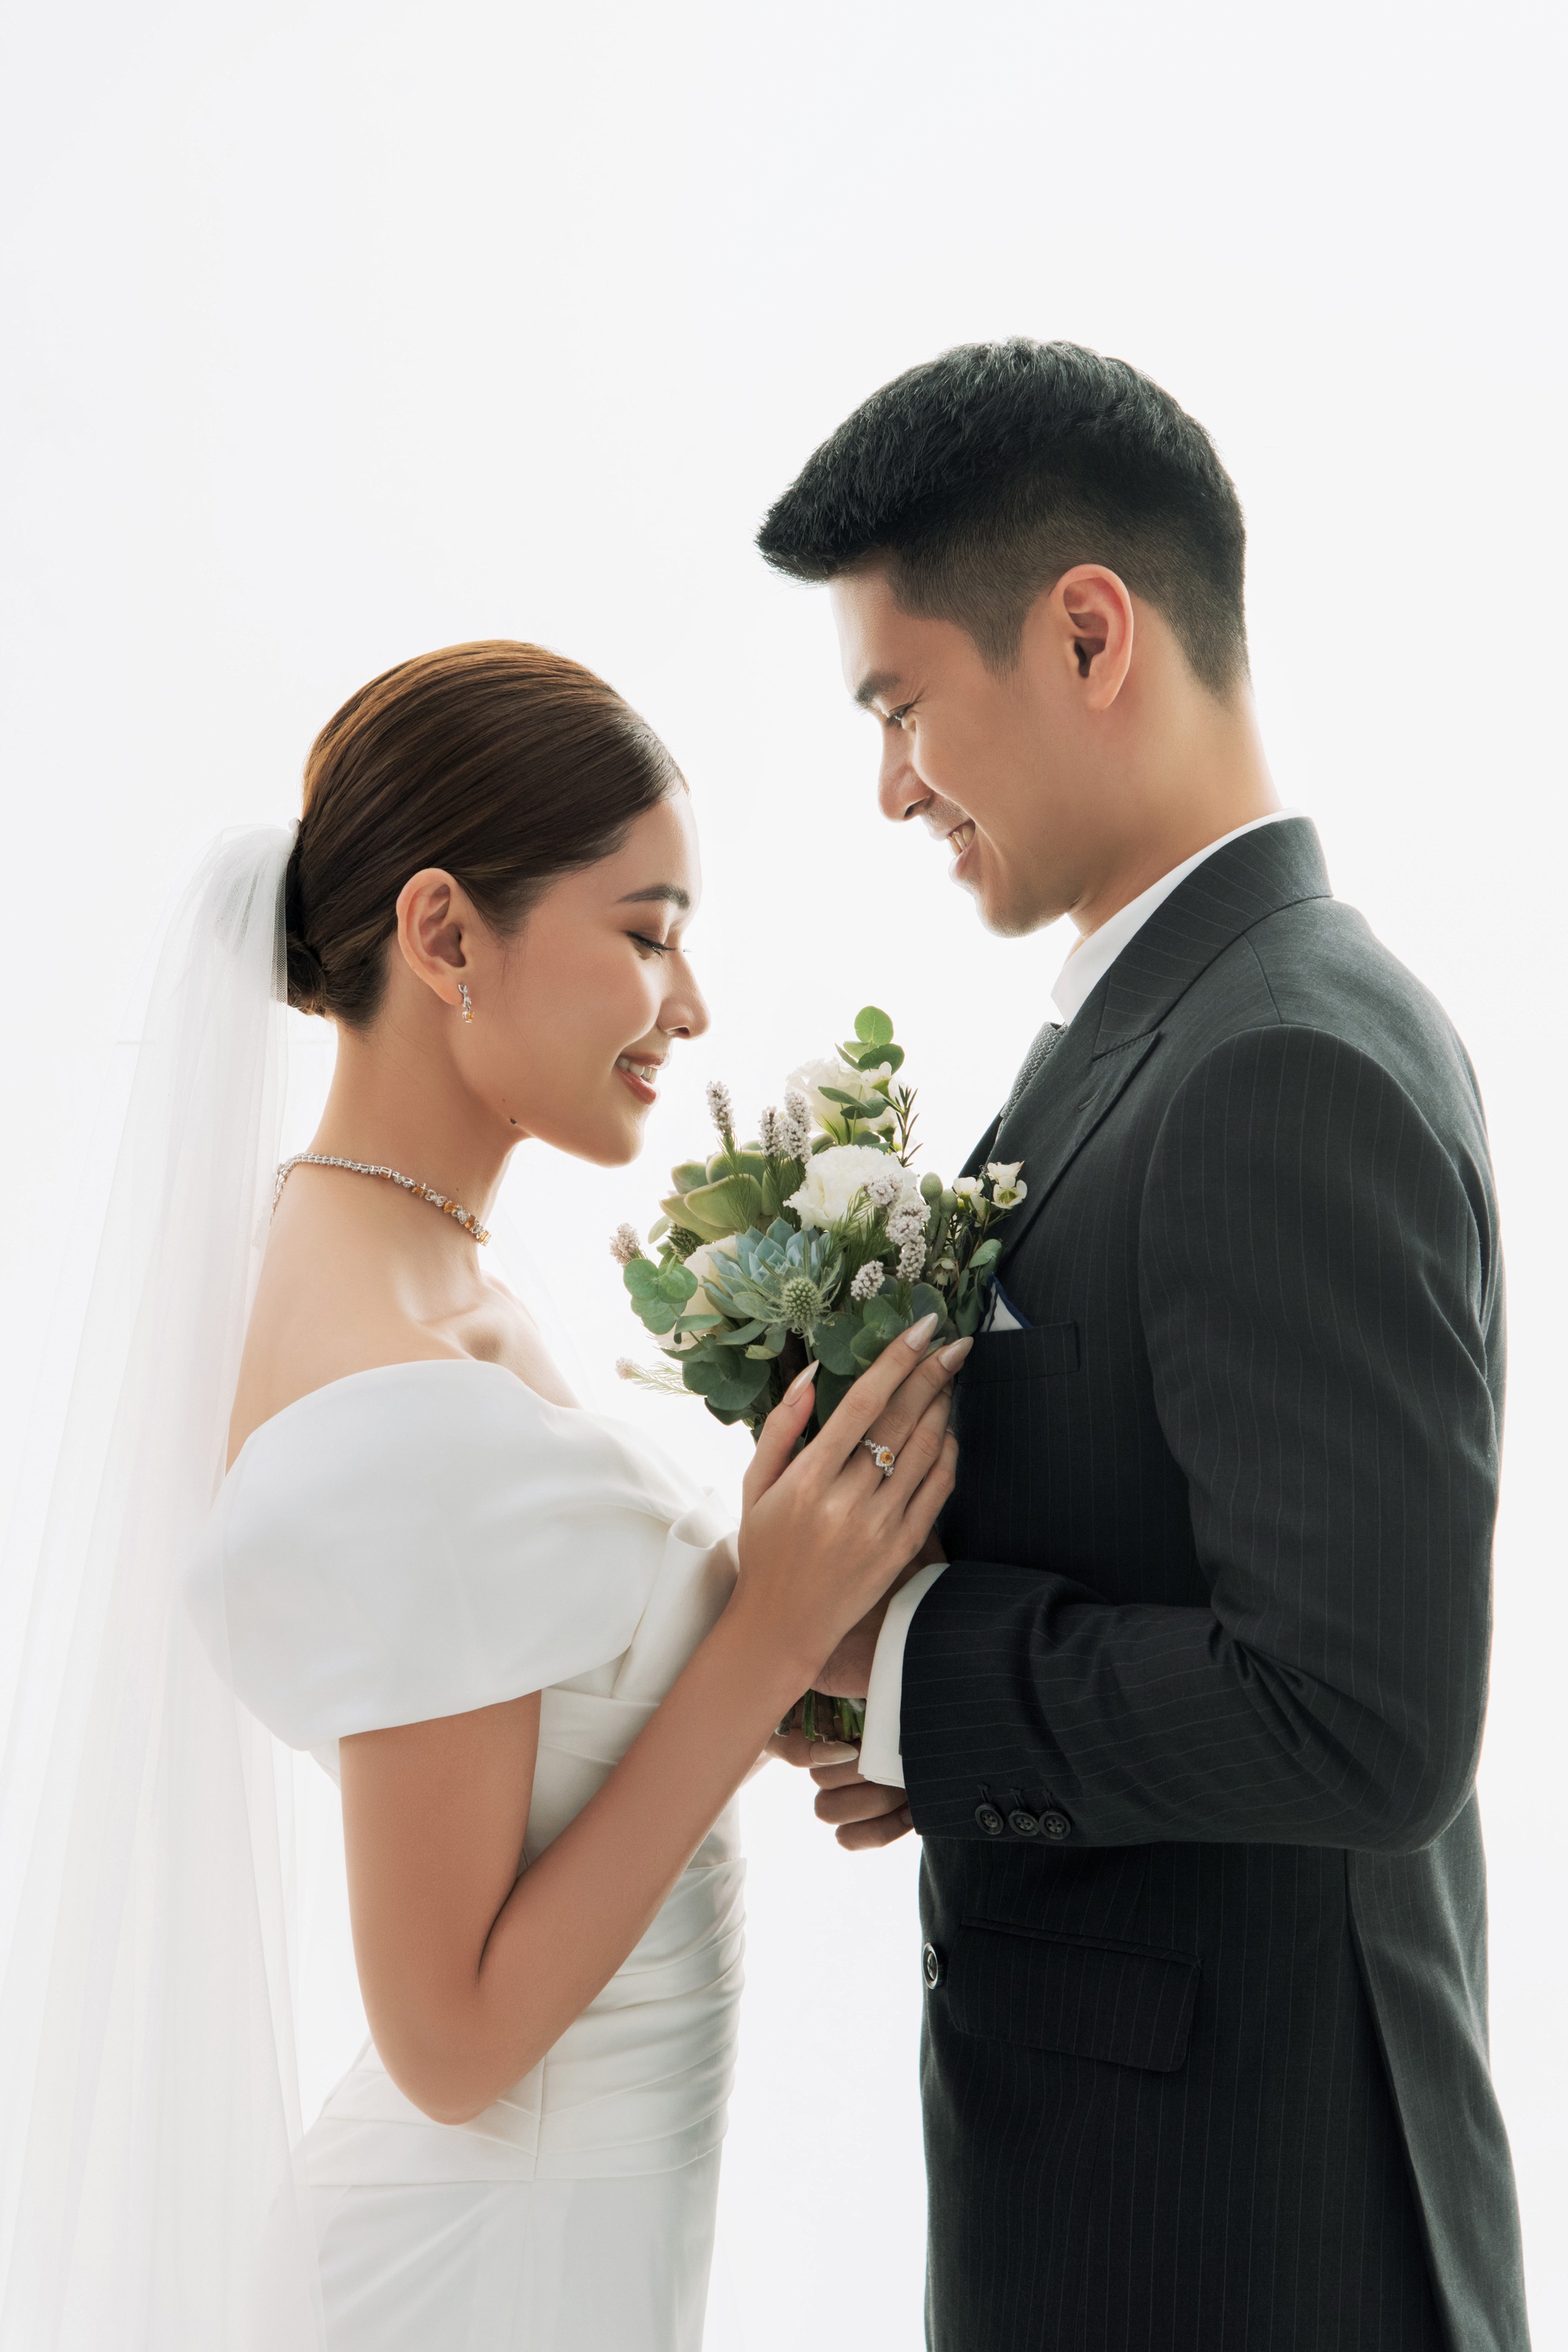 Ảnh cưới ngọt ngào của Á hậu Thùy Dung và ông xã doanh nhân - Ảnh 2.